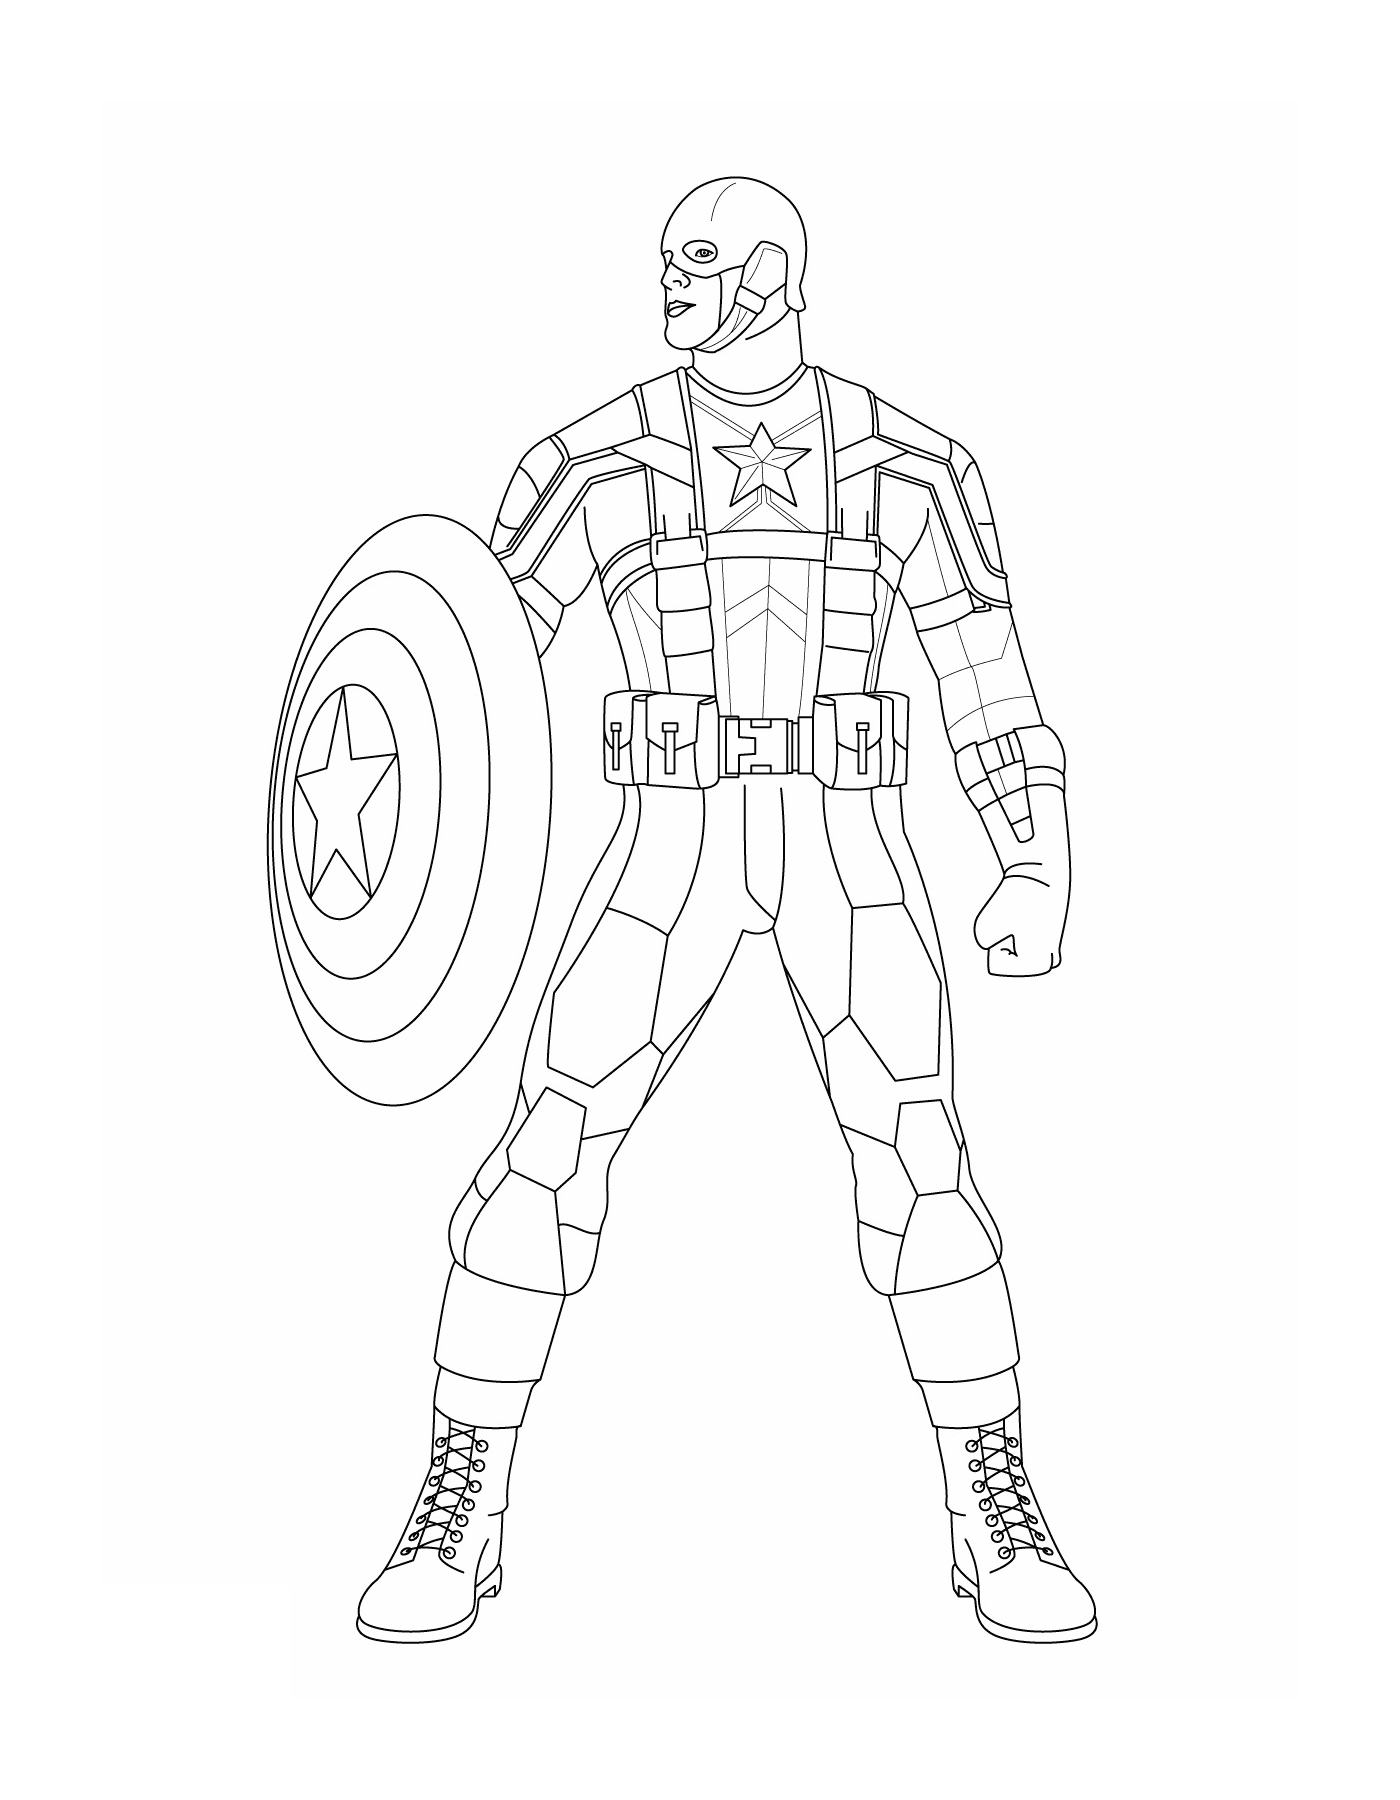  Окраска Капитана Америка 11, изображение Капитана Америка 